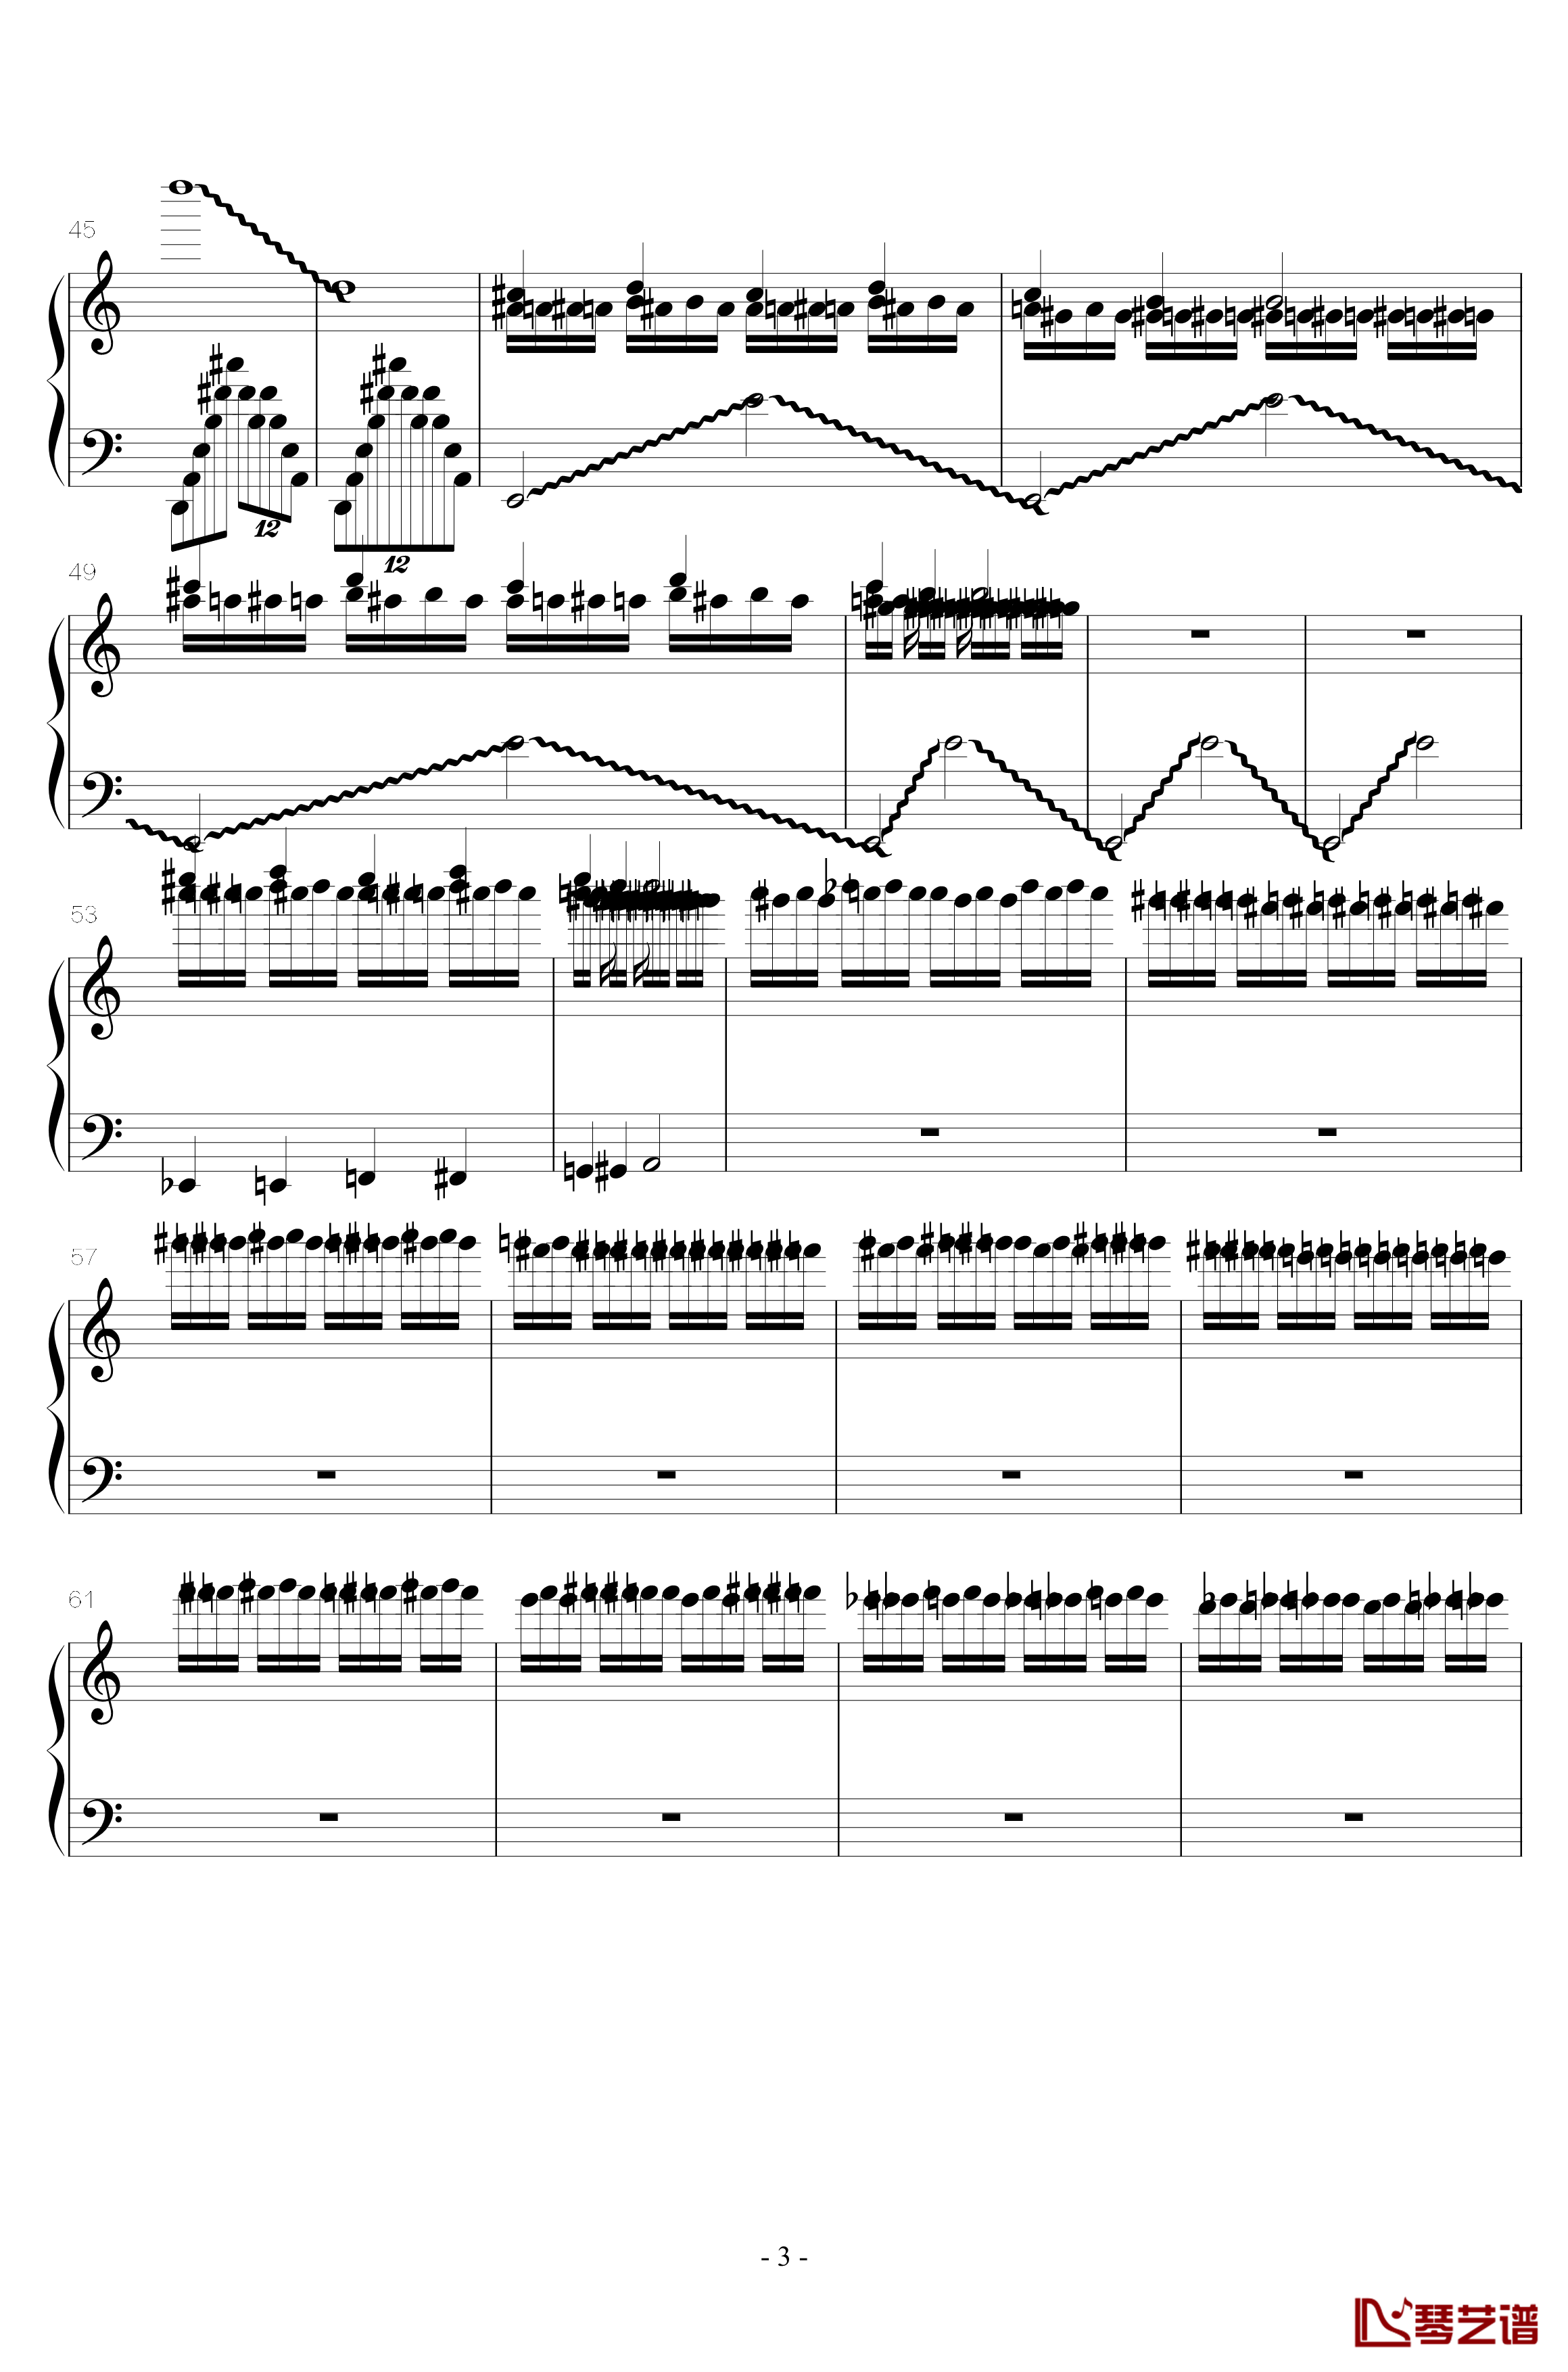 火星练习曲钢琴谱-Op.2 No.63